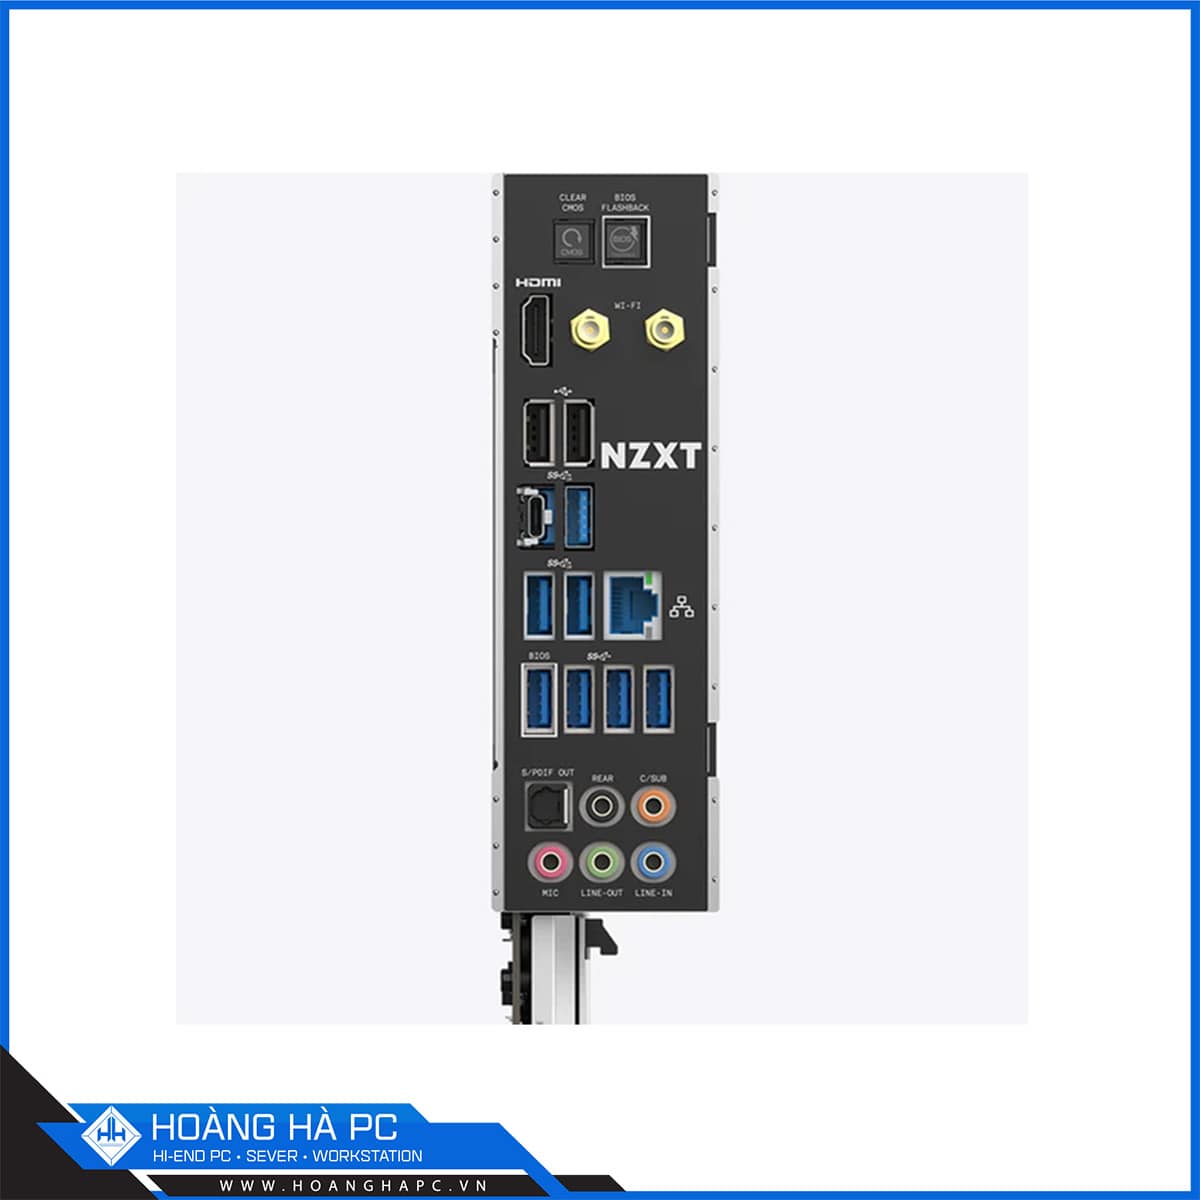 Mainboard NZXT N7 B550 (AMD B550, Socket AM4, ATX, 4 khe RAM DRR4)